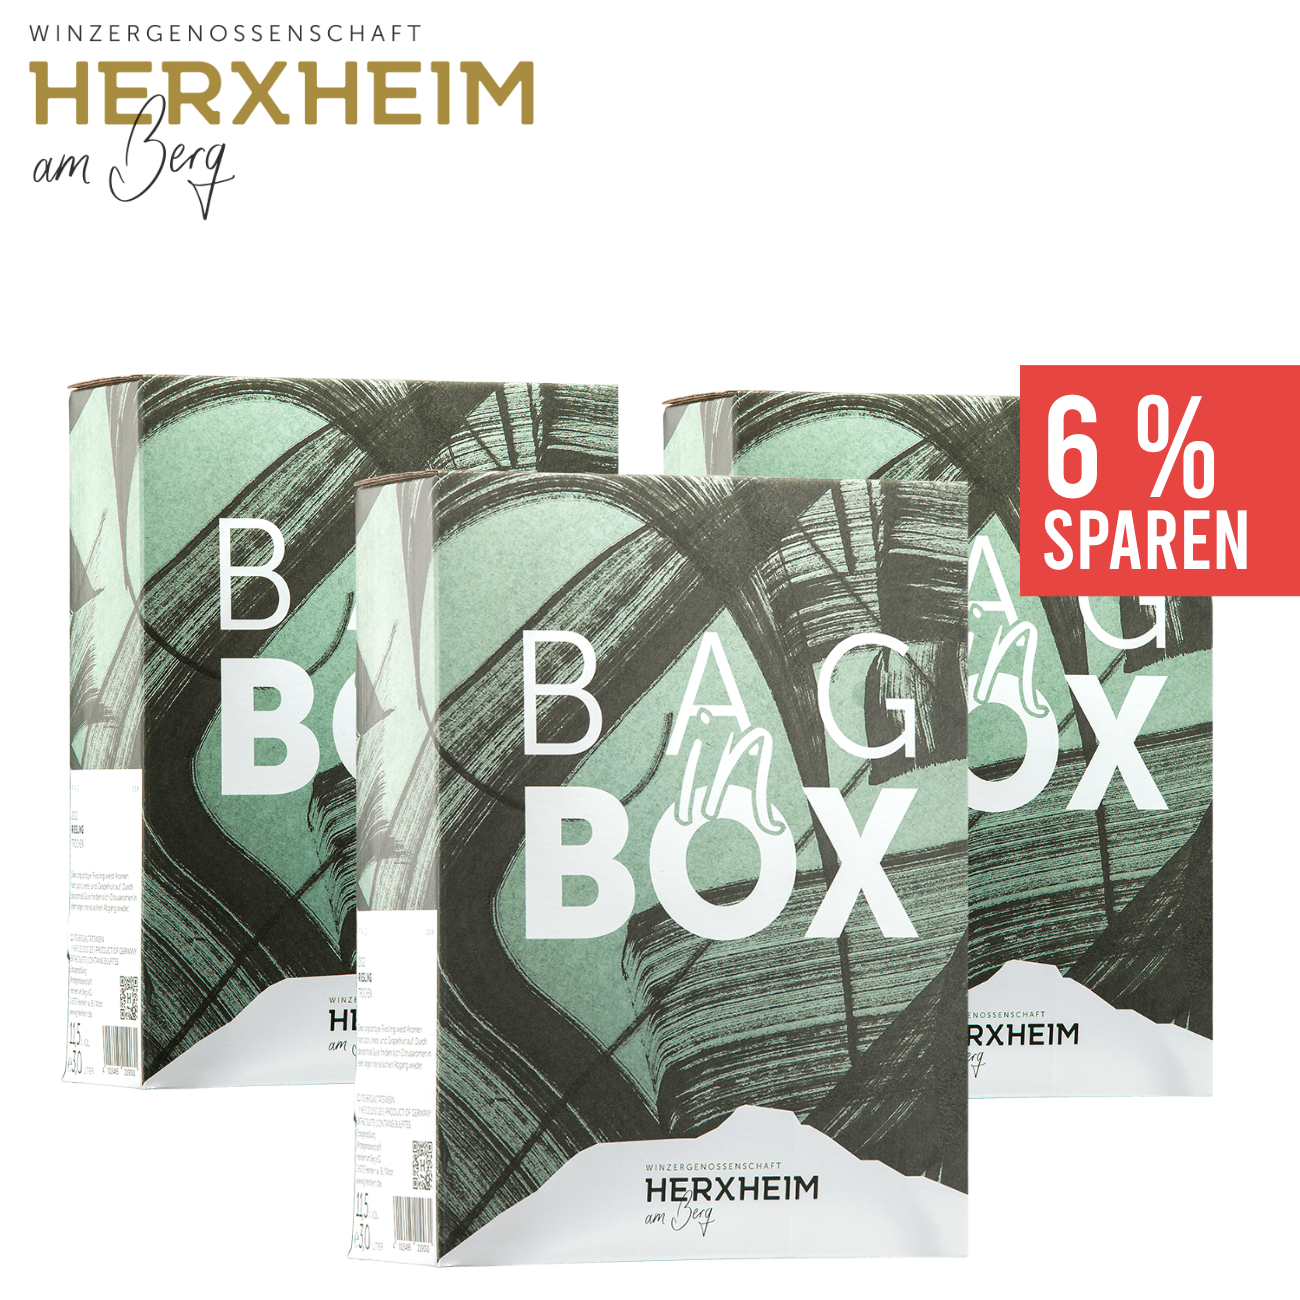 3 x Riesling trocken Bag in Box 3,0 L - WG Herxheim am Berg